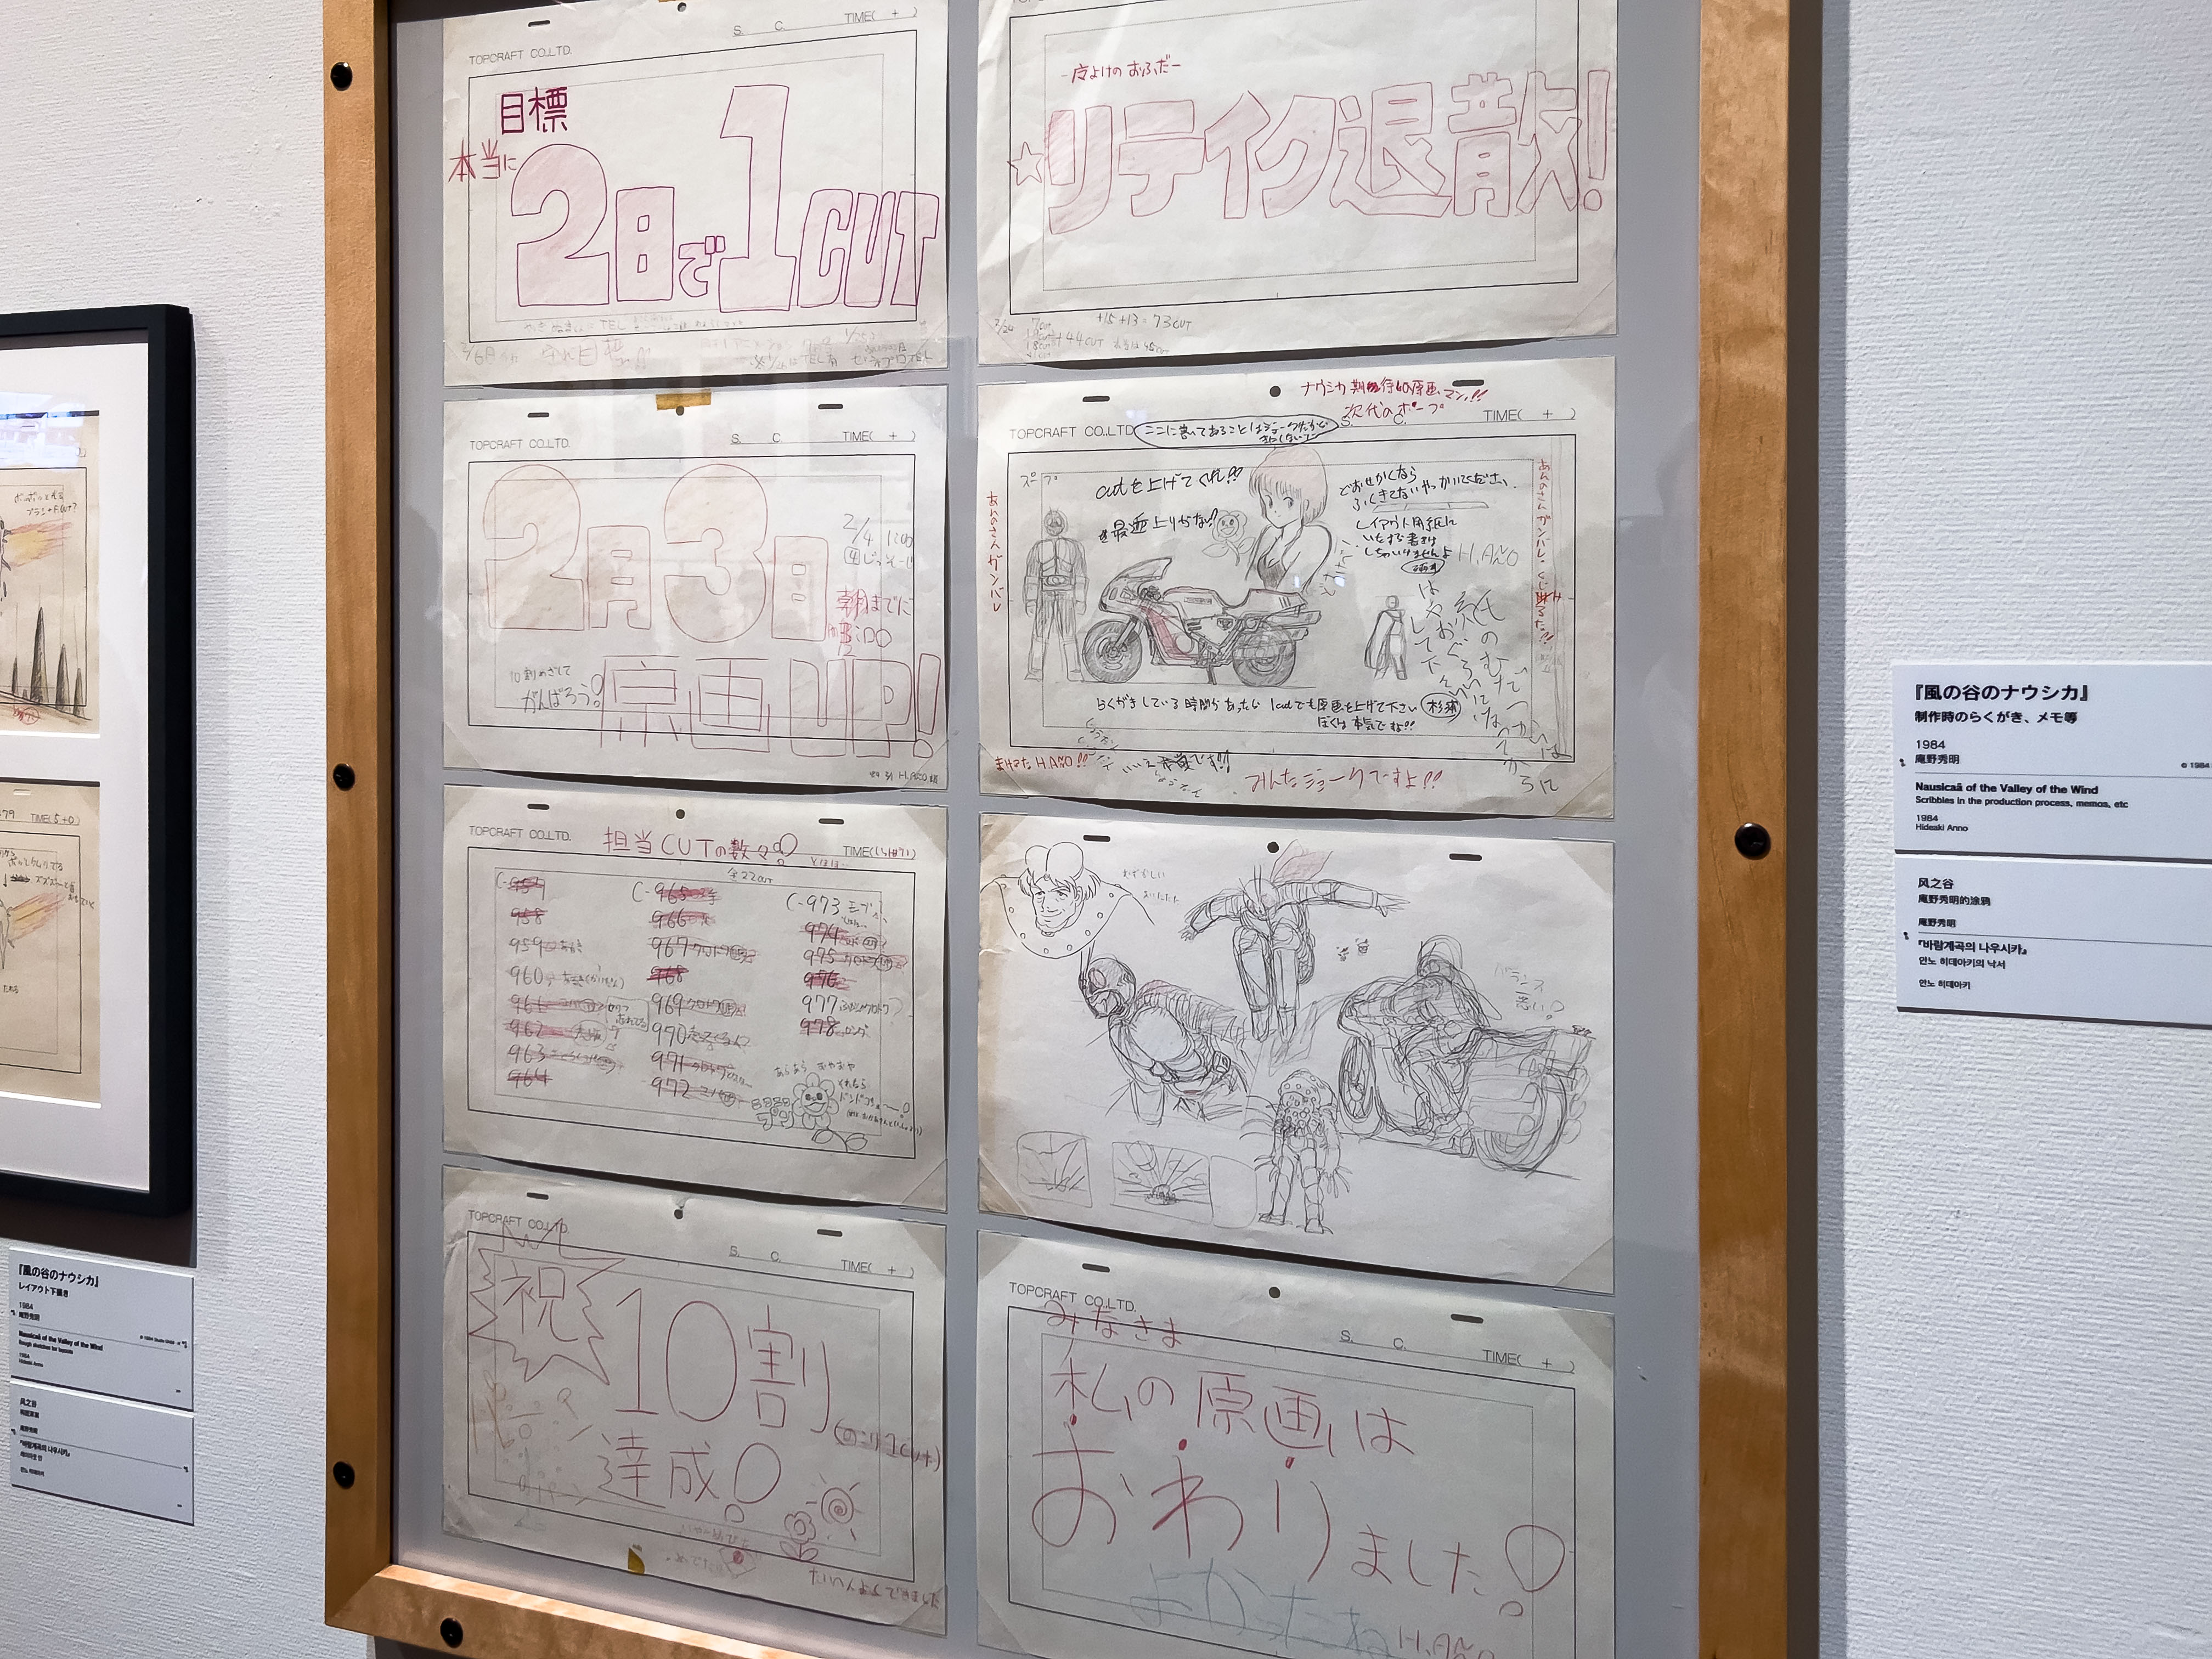 The Hideaki Anno Exhibition